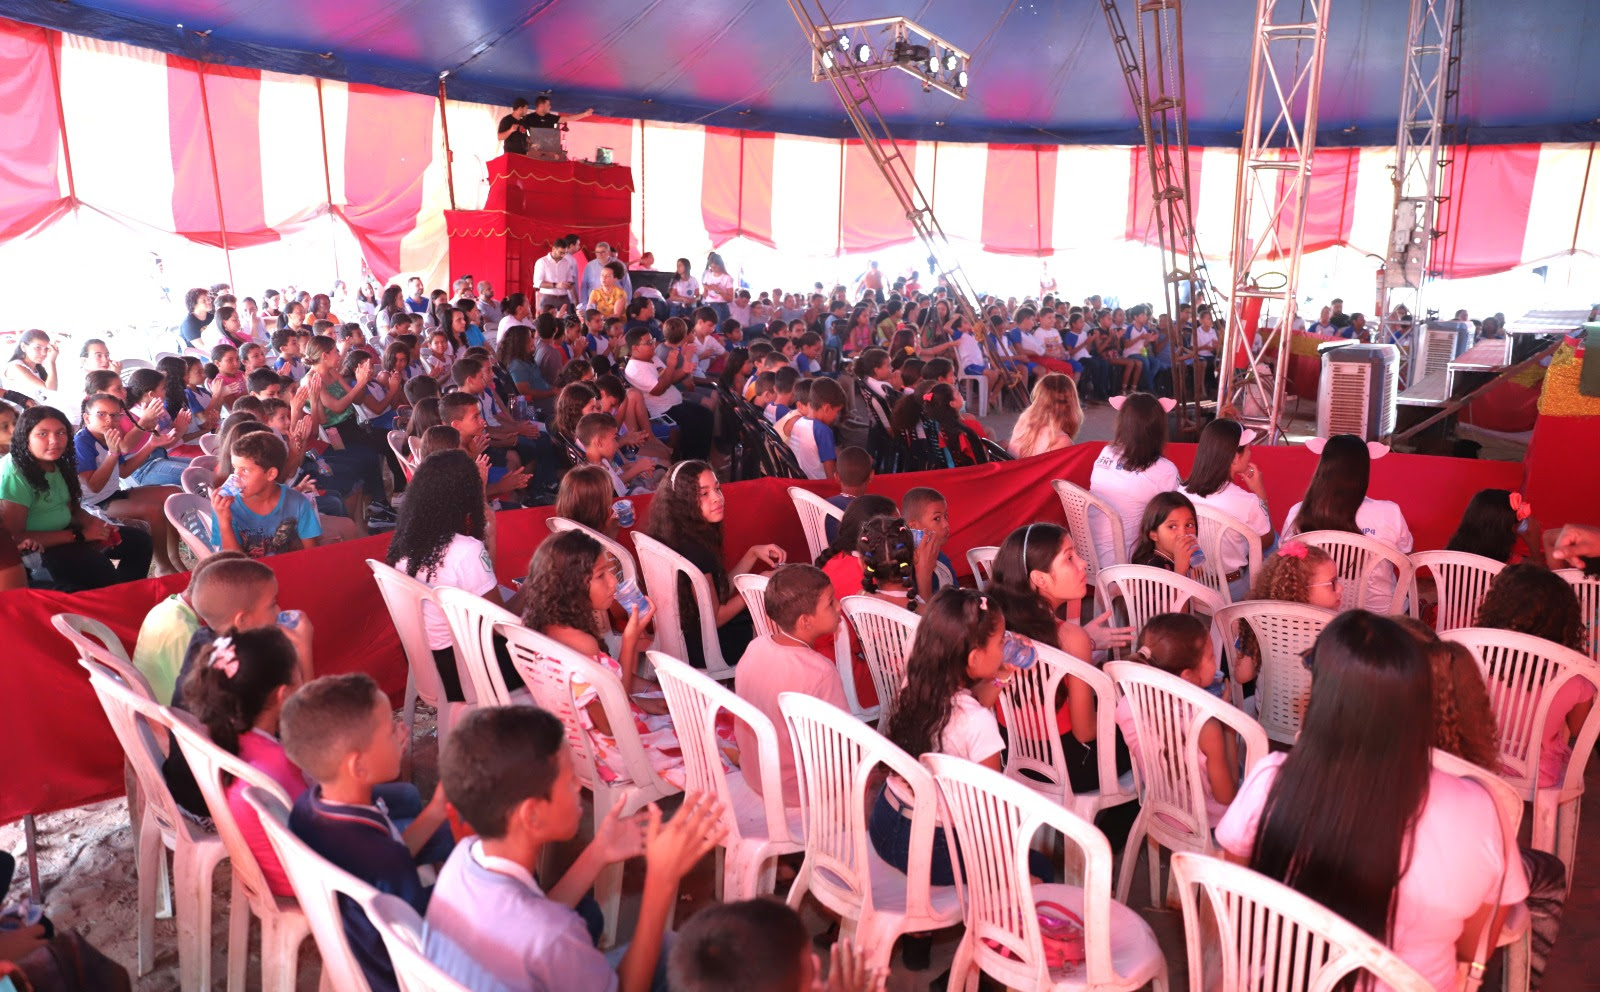 Pela manhã, cerca de 300 alunos de quatro escolas municipais foram até o Circo Astro para o evento Ciência no Circo